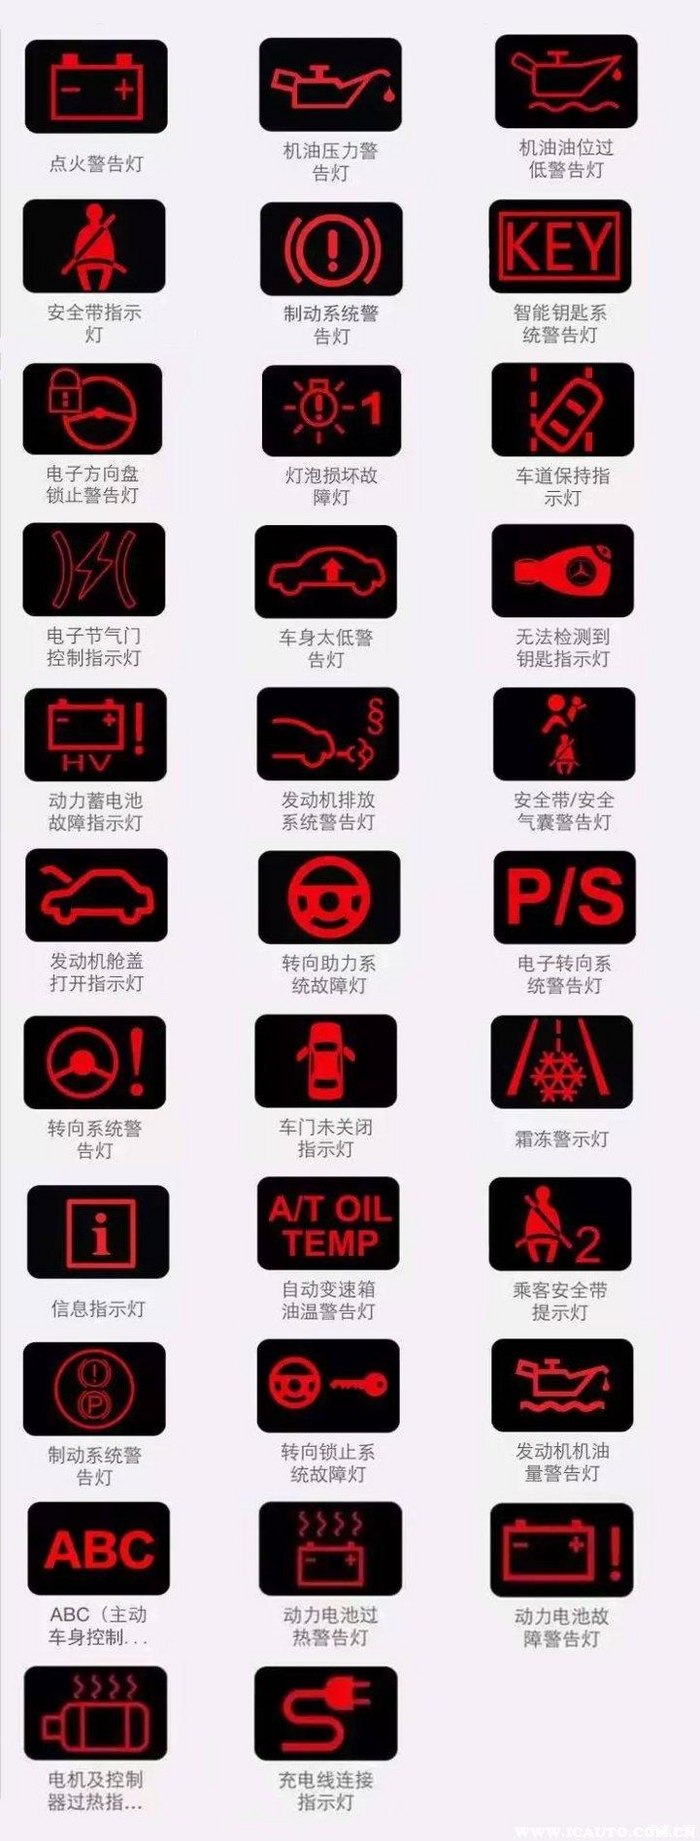 福田汽车故障灯标志图片